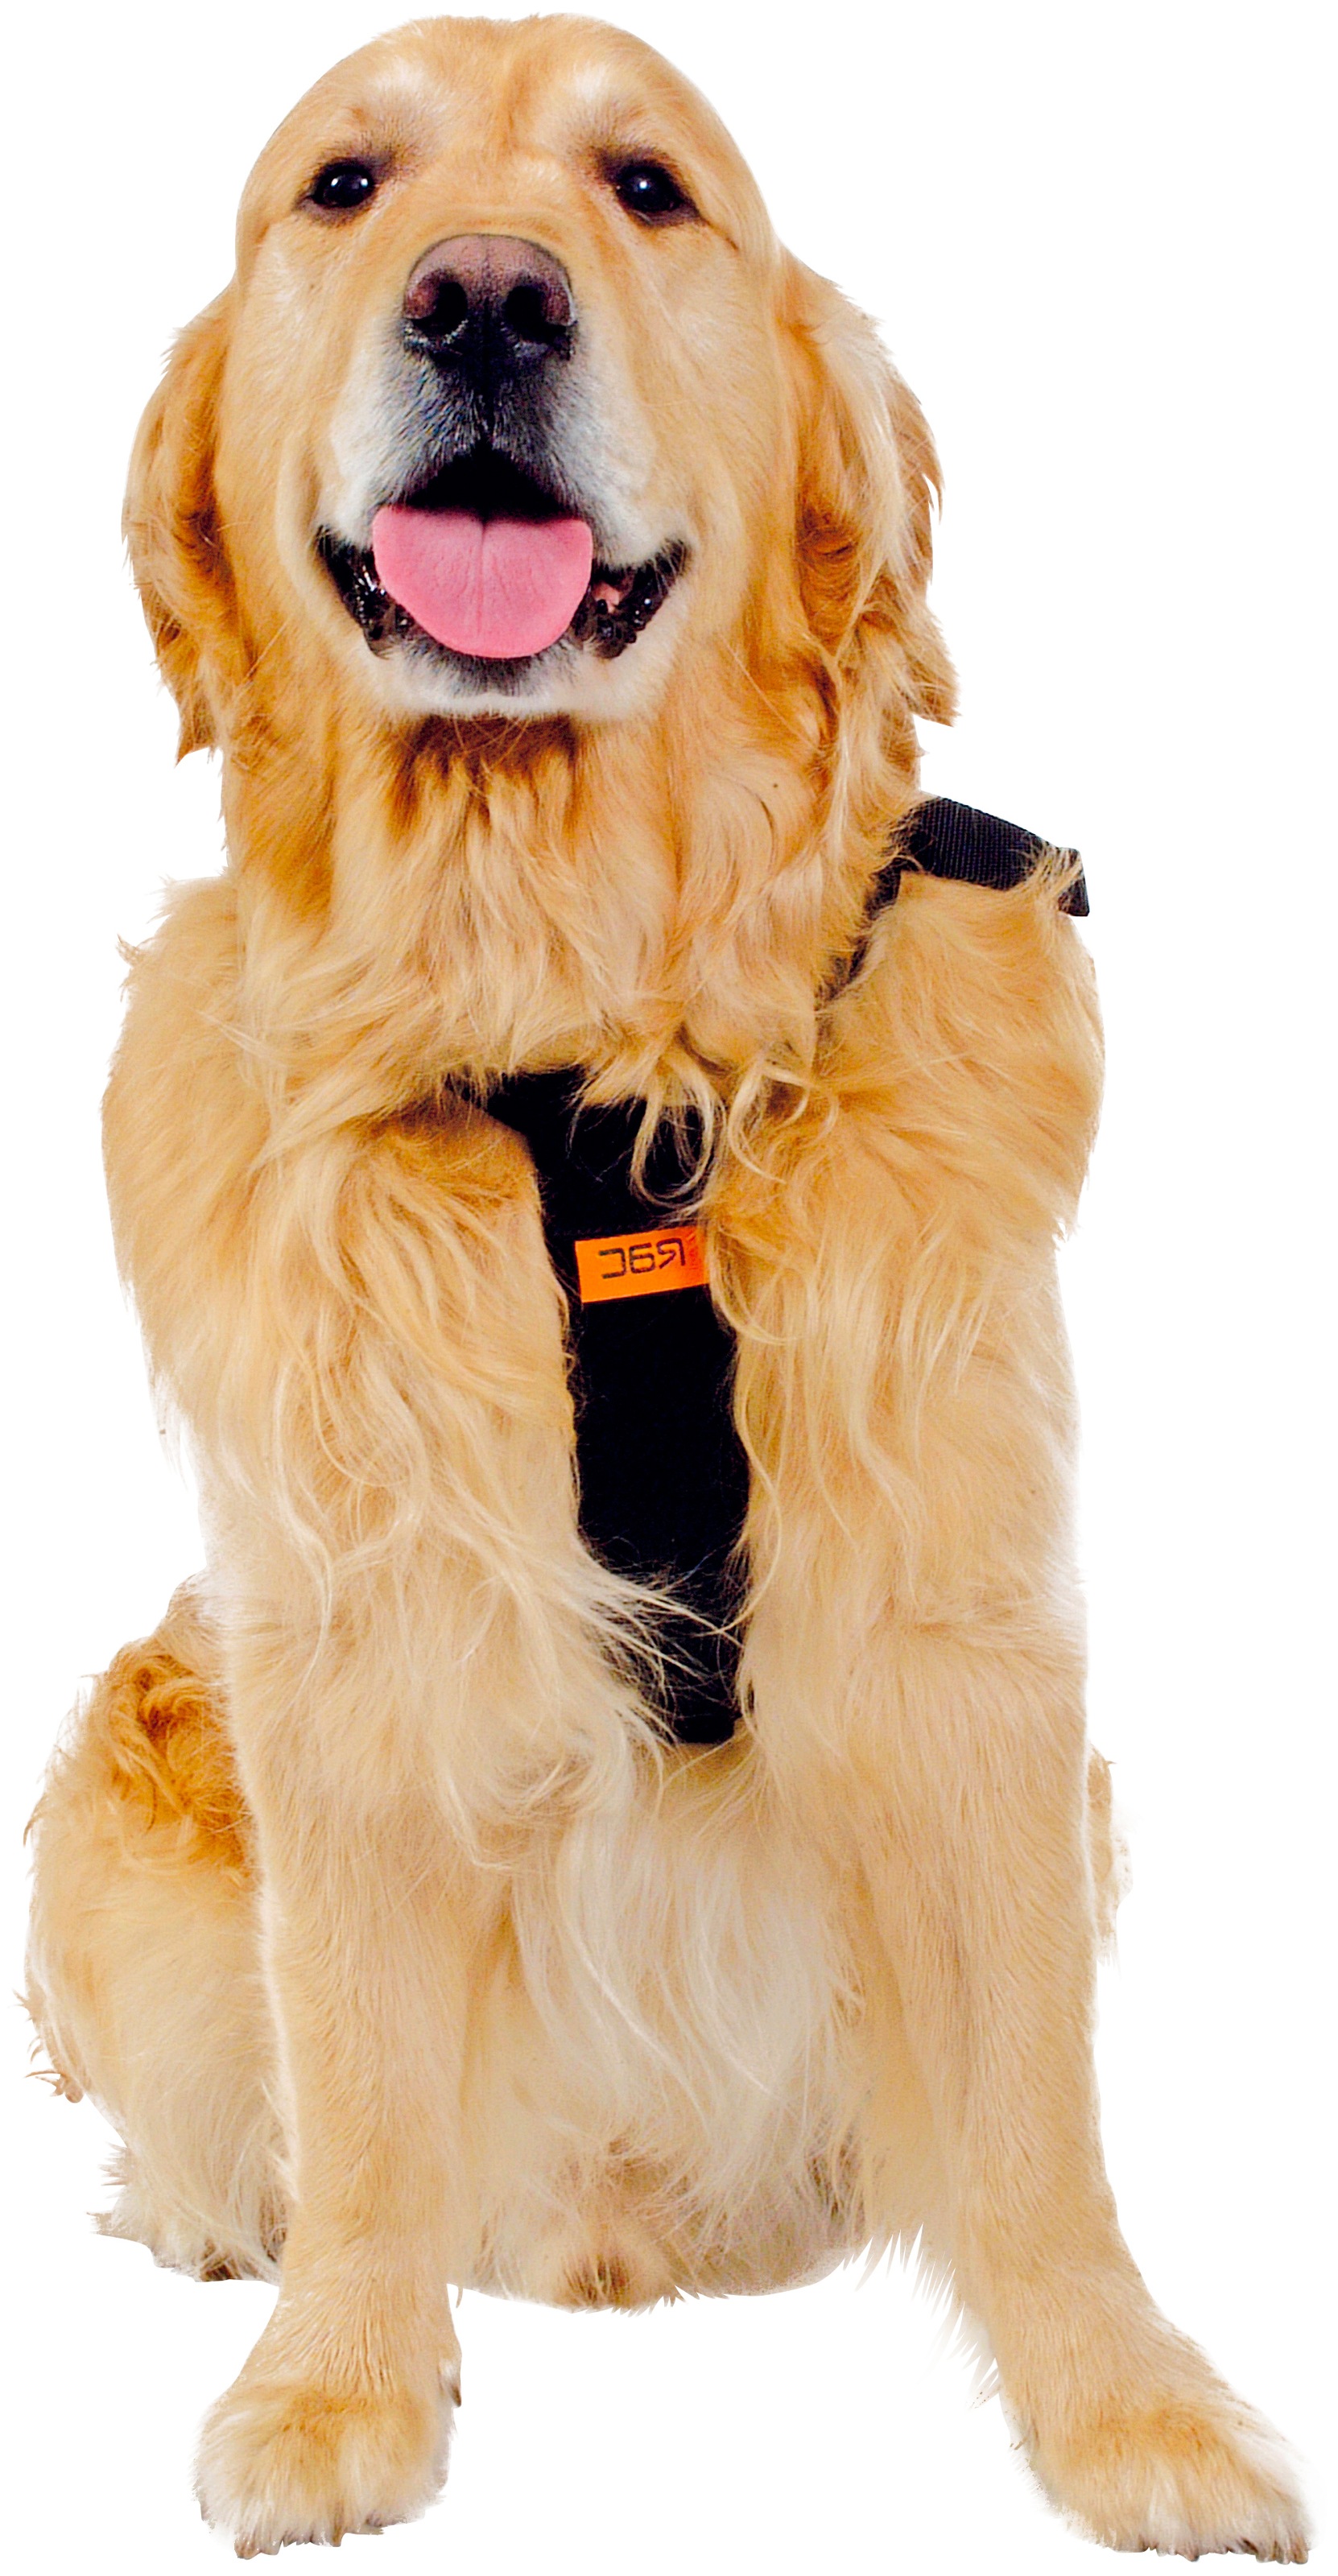 ᐅ Hund Sicherheitsgeschirr Test 2020 » Testsieger der Stiftung Warentest